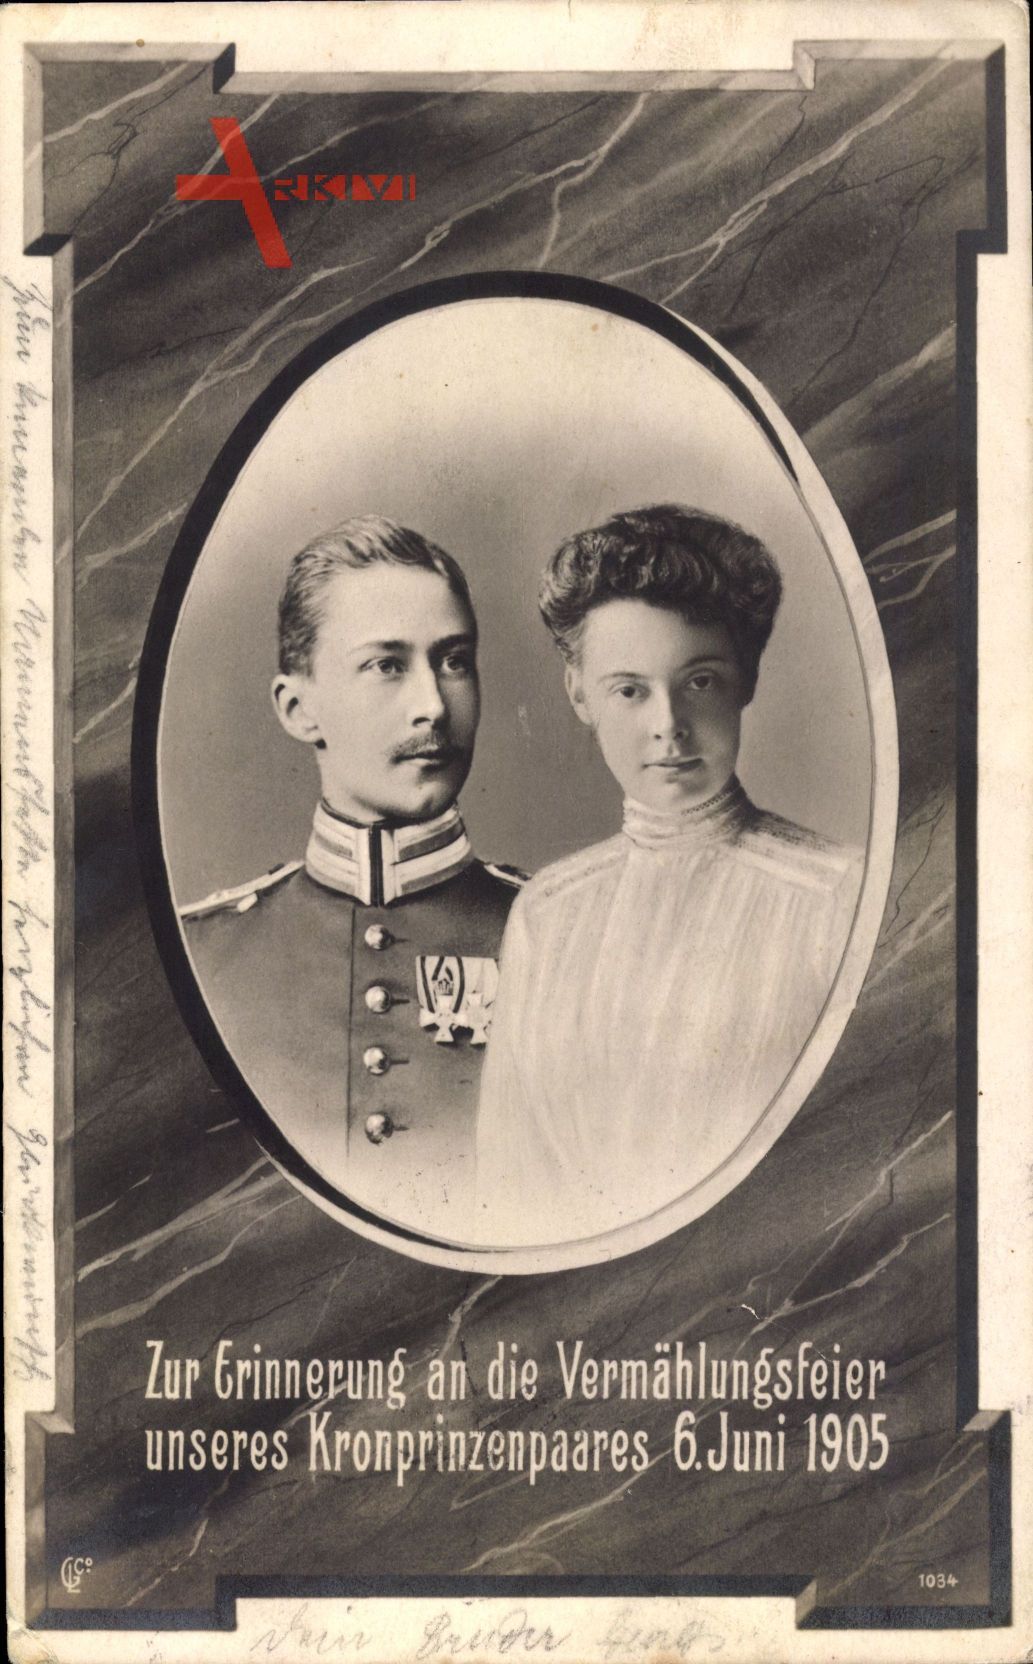 Kronprinz Wilhelm von Preussen, Kronprinzessin Cecilie von Preußen, Juni 1905